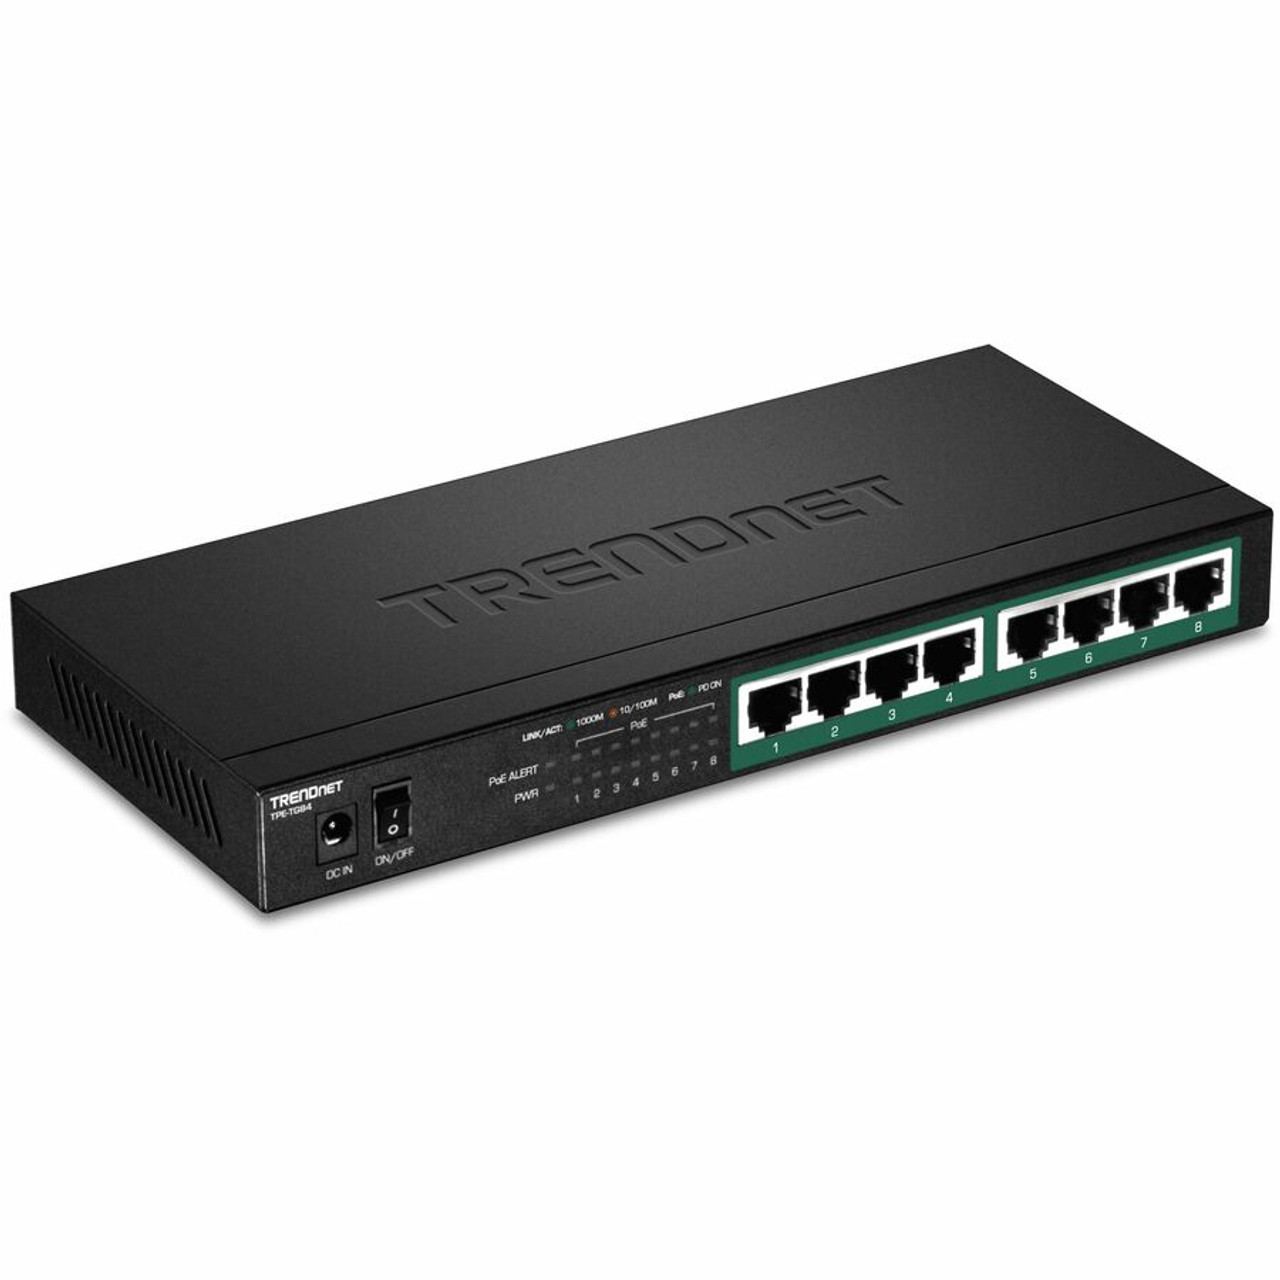 TRENDnet 8-Port Gigabit PoE+ Switch, 120W PoE Power Budget, 16Gbps